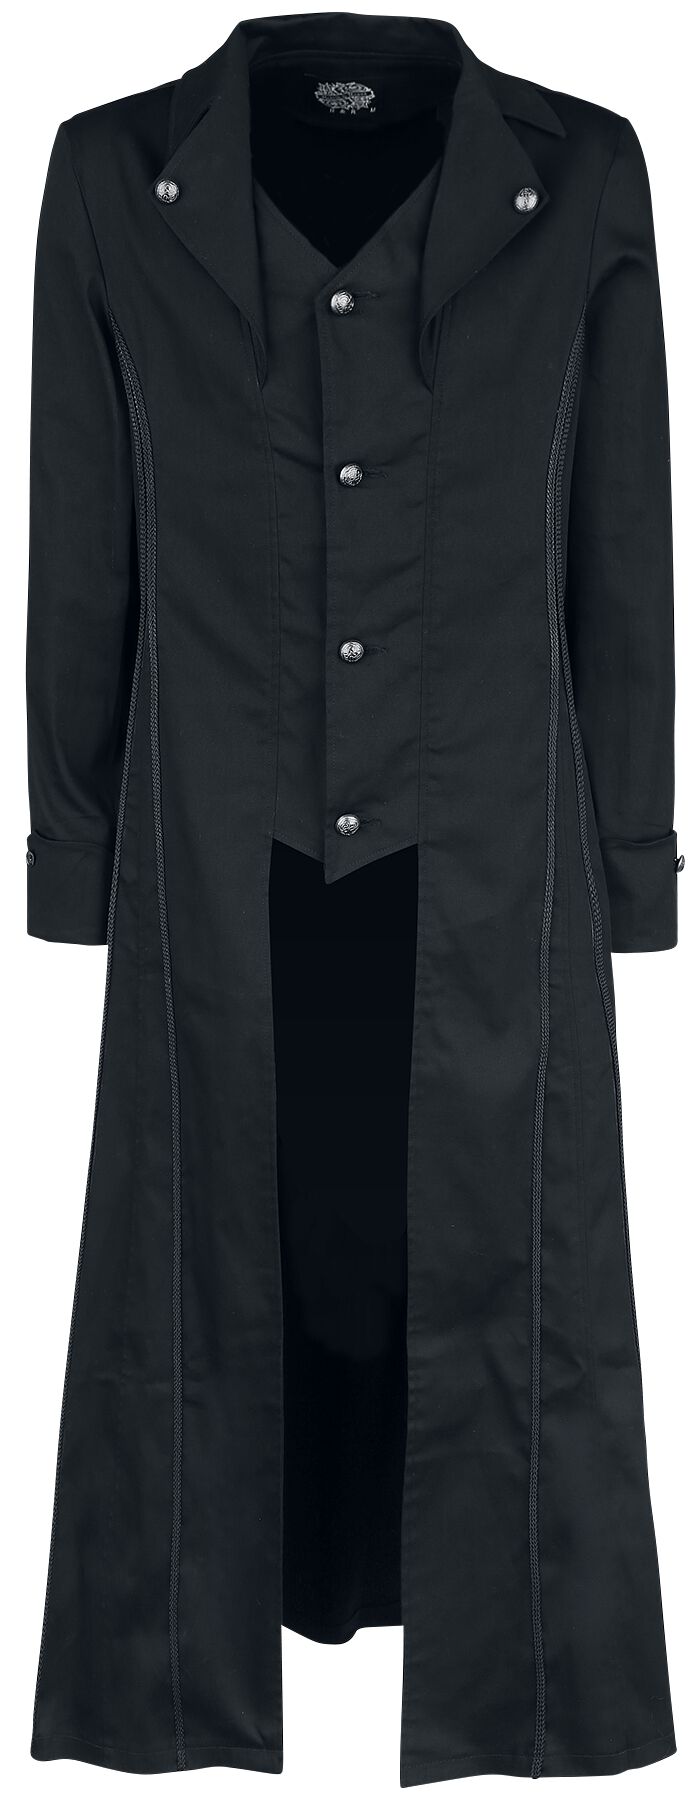 H&R London - Gothic Militärmantel - Black Classic Coat - S bis XXL - für Männer - Größe M - schwarz von H&R London